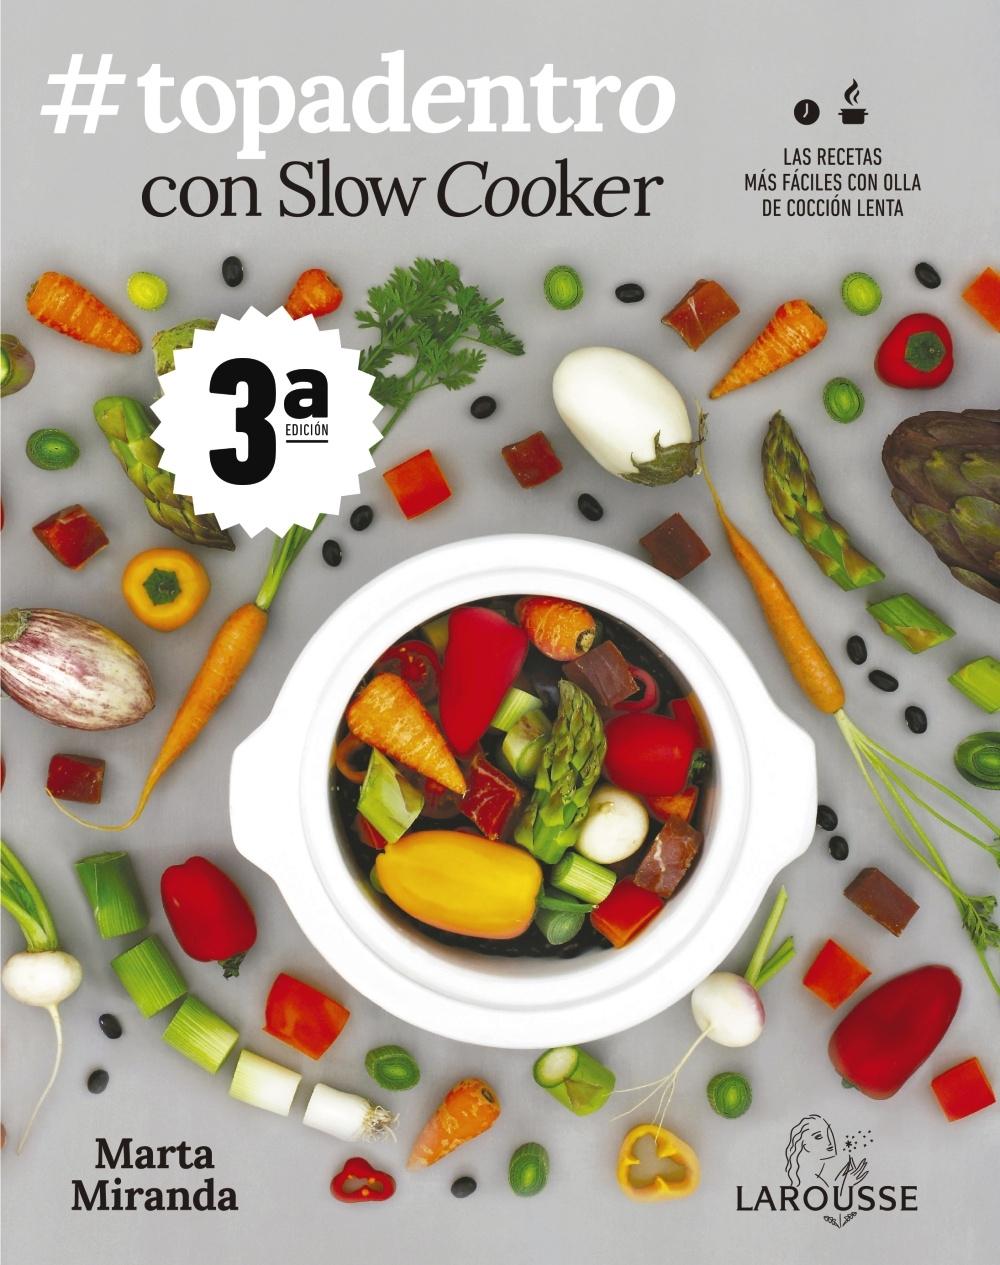 #topadentro con Slow Cooker "Las recetas más fáciles con olla de cocción lenta". 